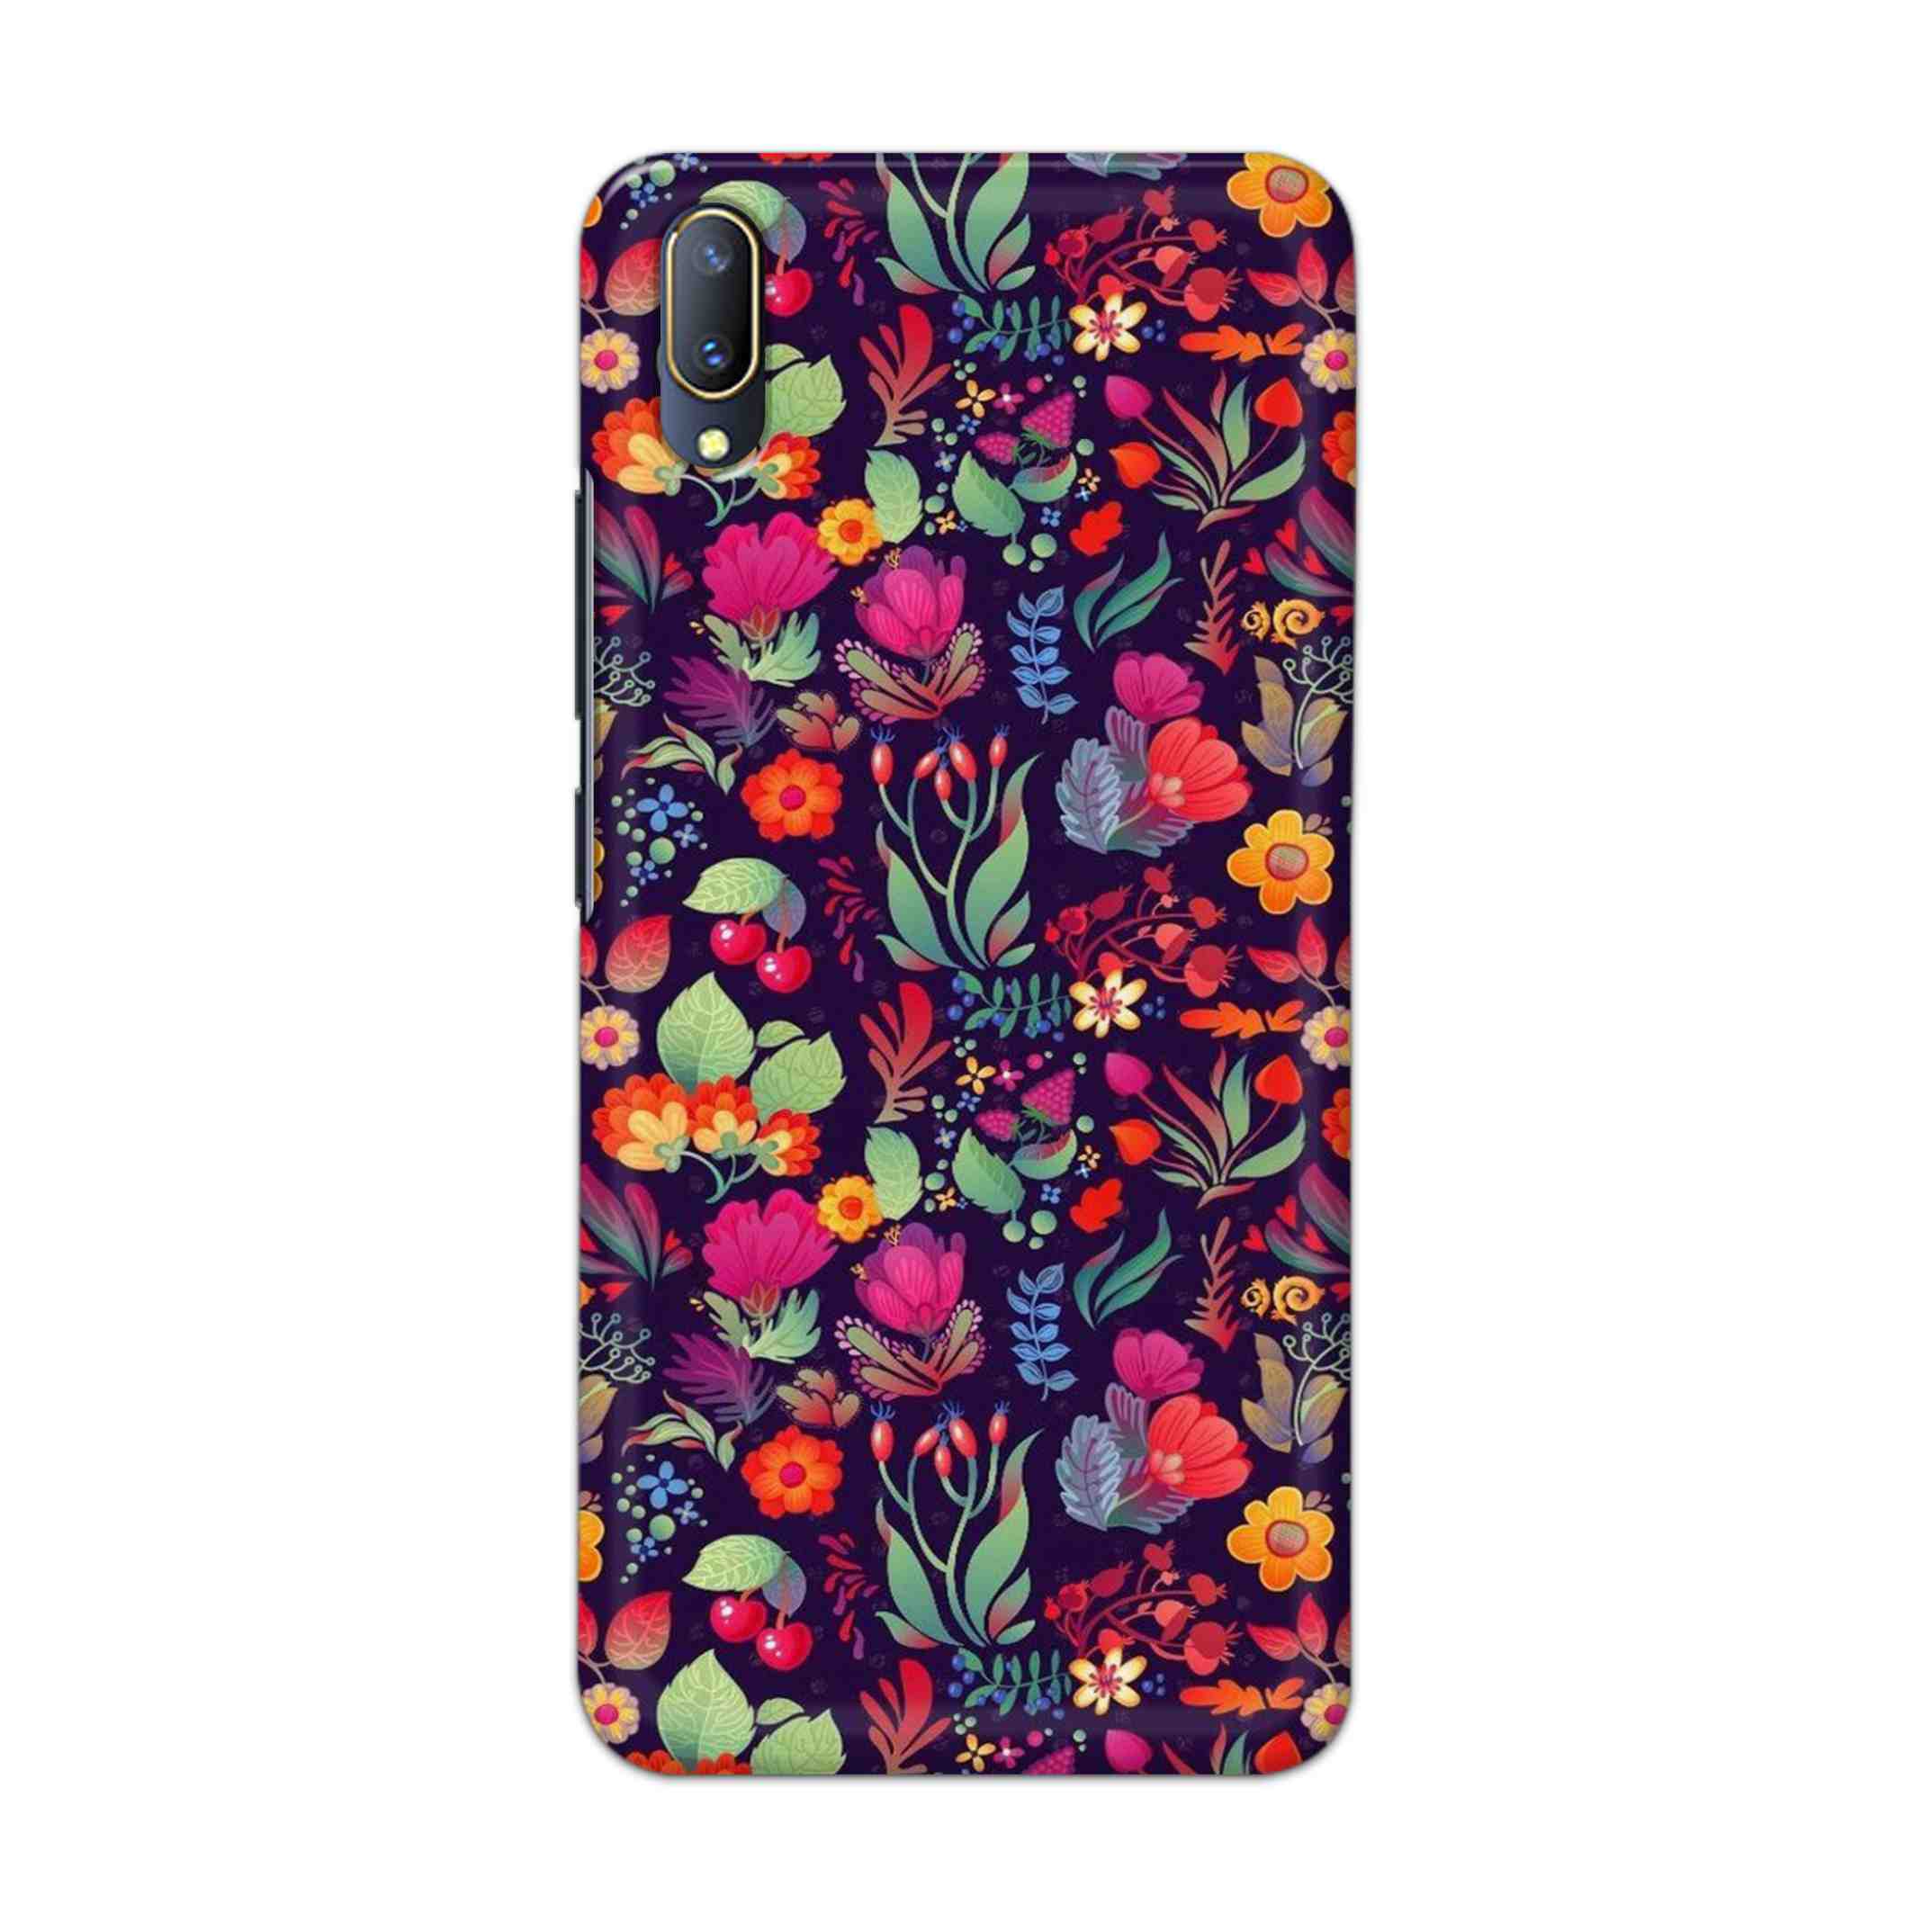 Buy Fruits Flower Hard Back Mobile Phone Case Cover For V11 PRO Online